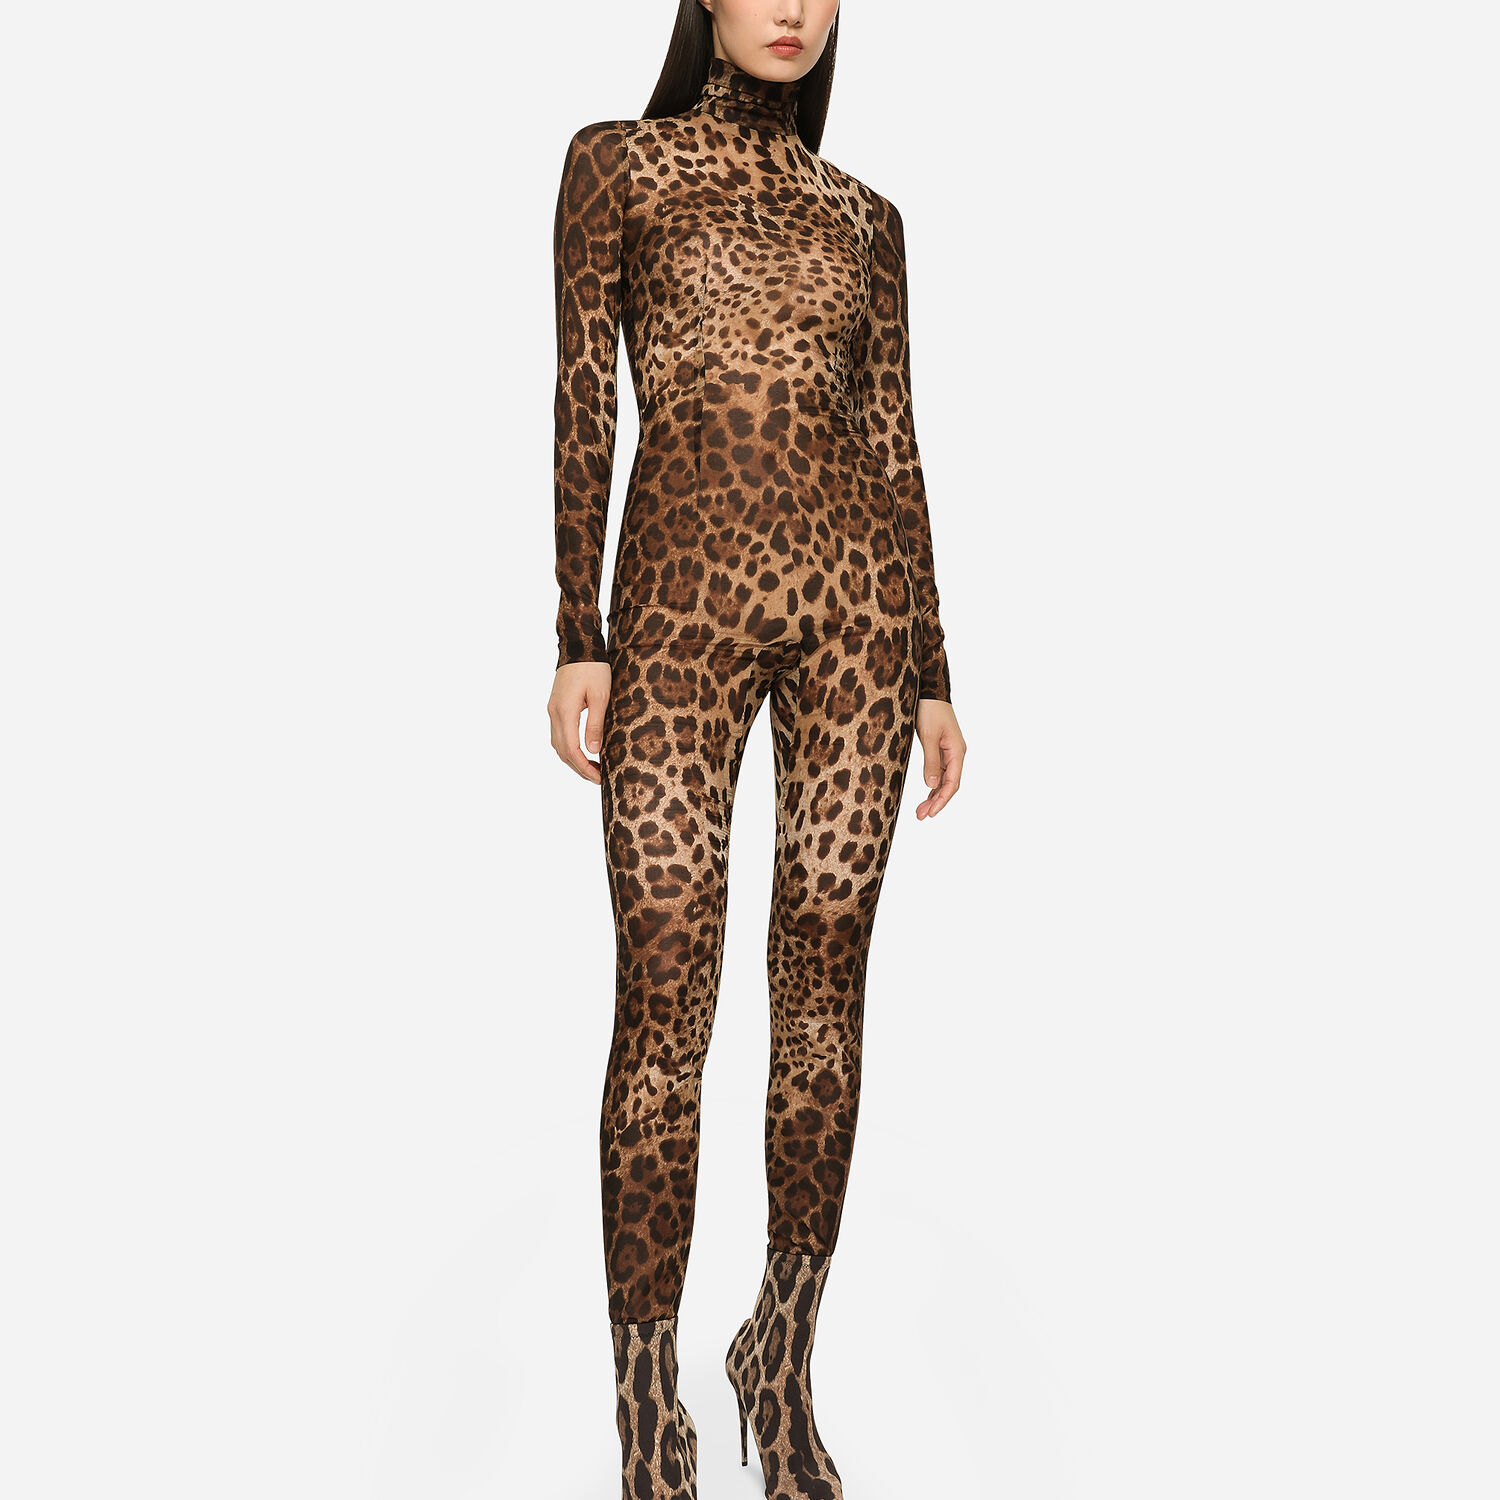 Dolce & Gabbana, leopard prints in abundance  Animal print fashion, Dark  fashion, Fashion